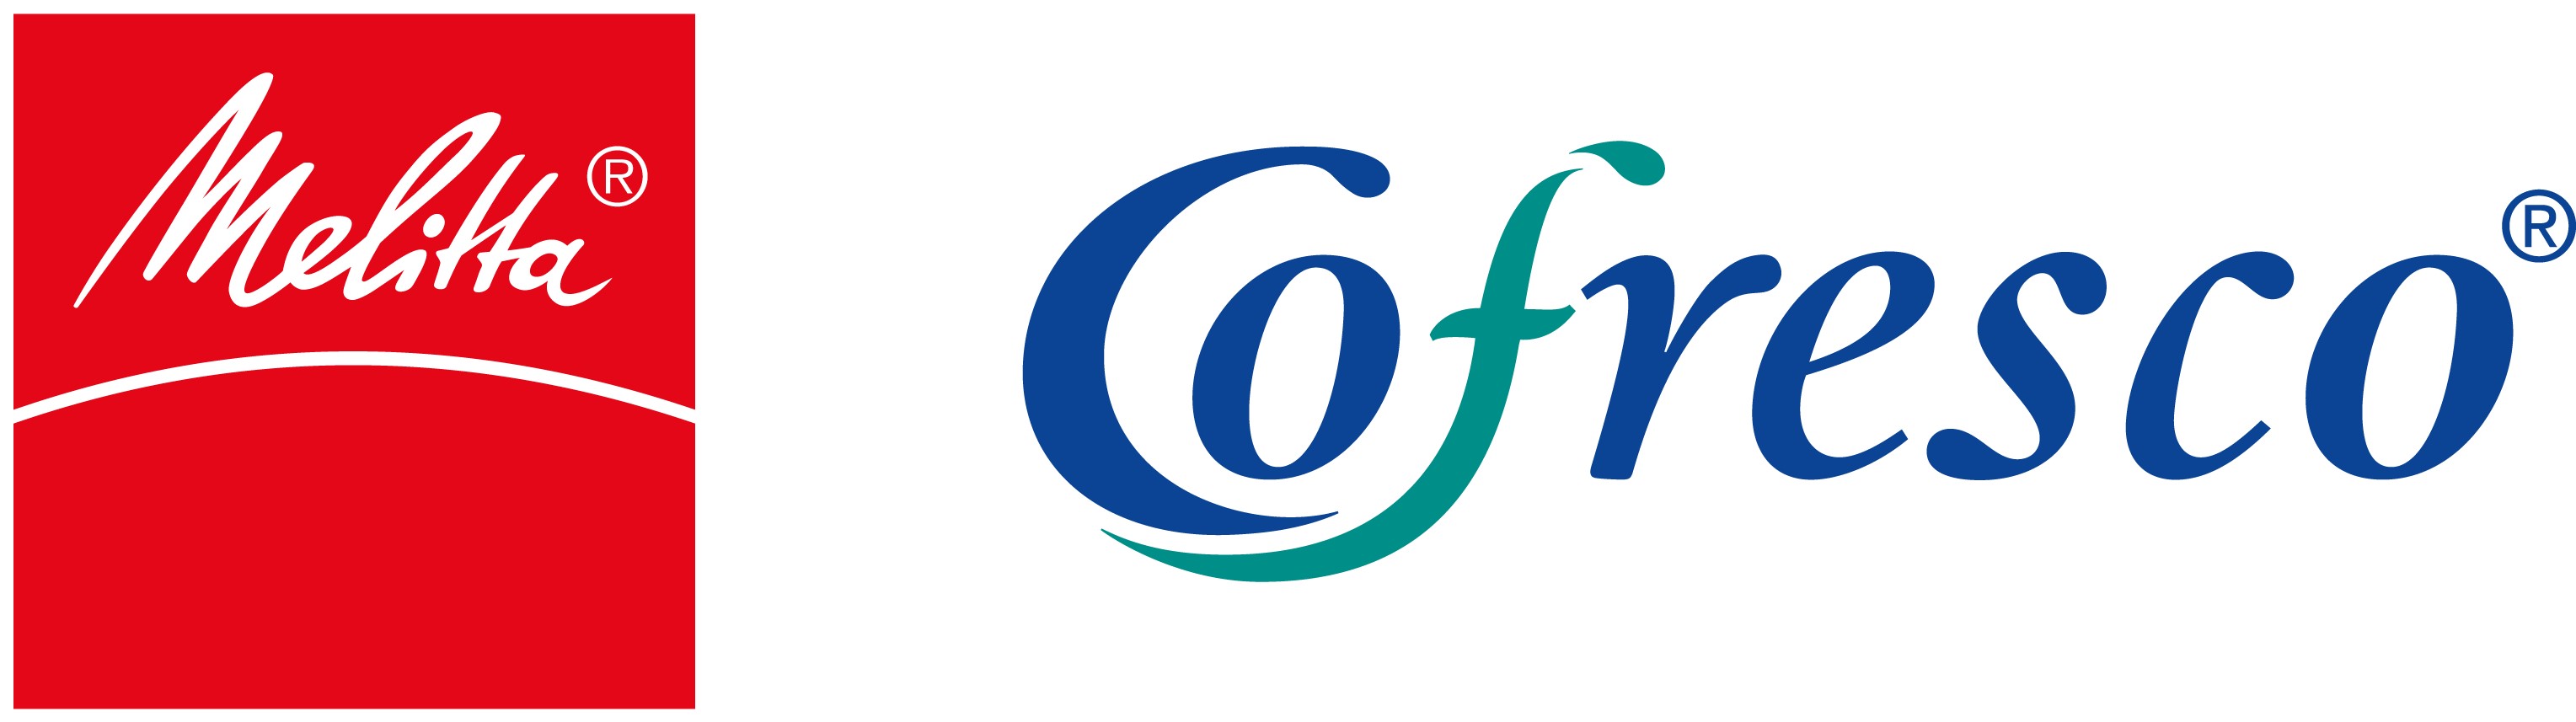 26112 - Melitta+Cofresco Logos(LANDSCAPE)